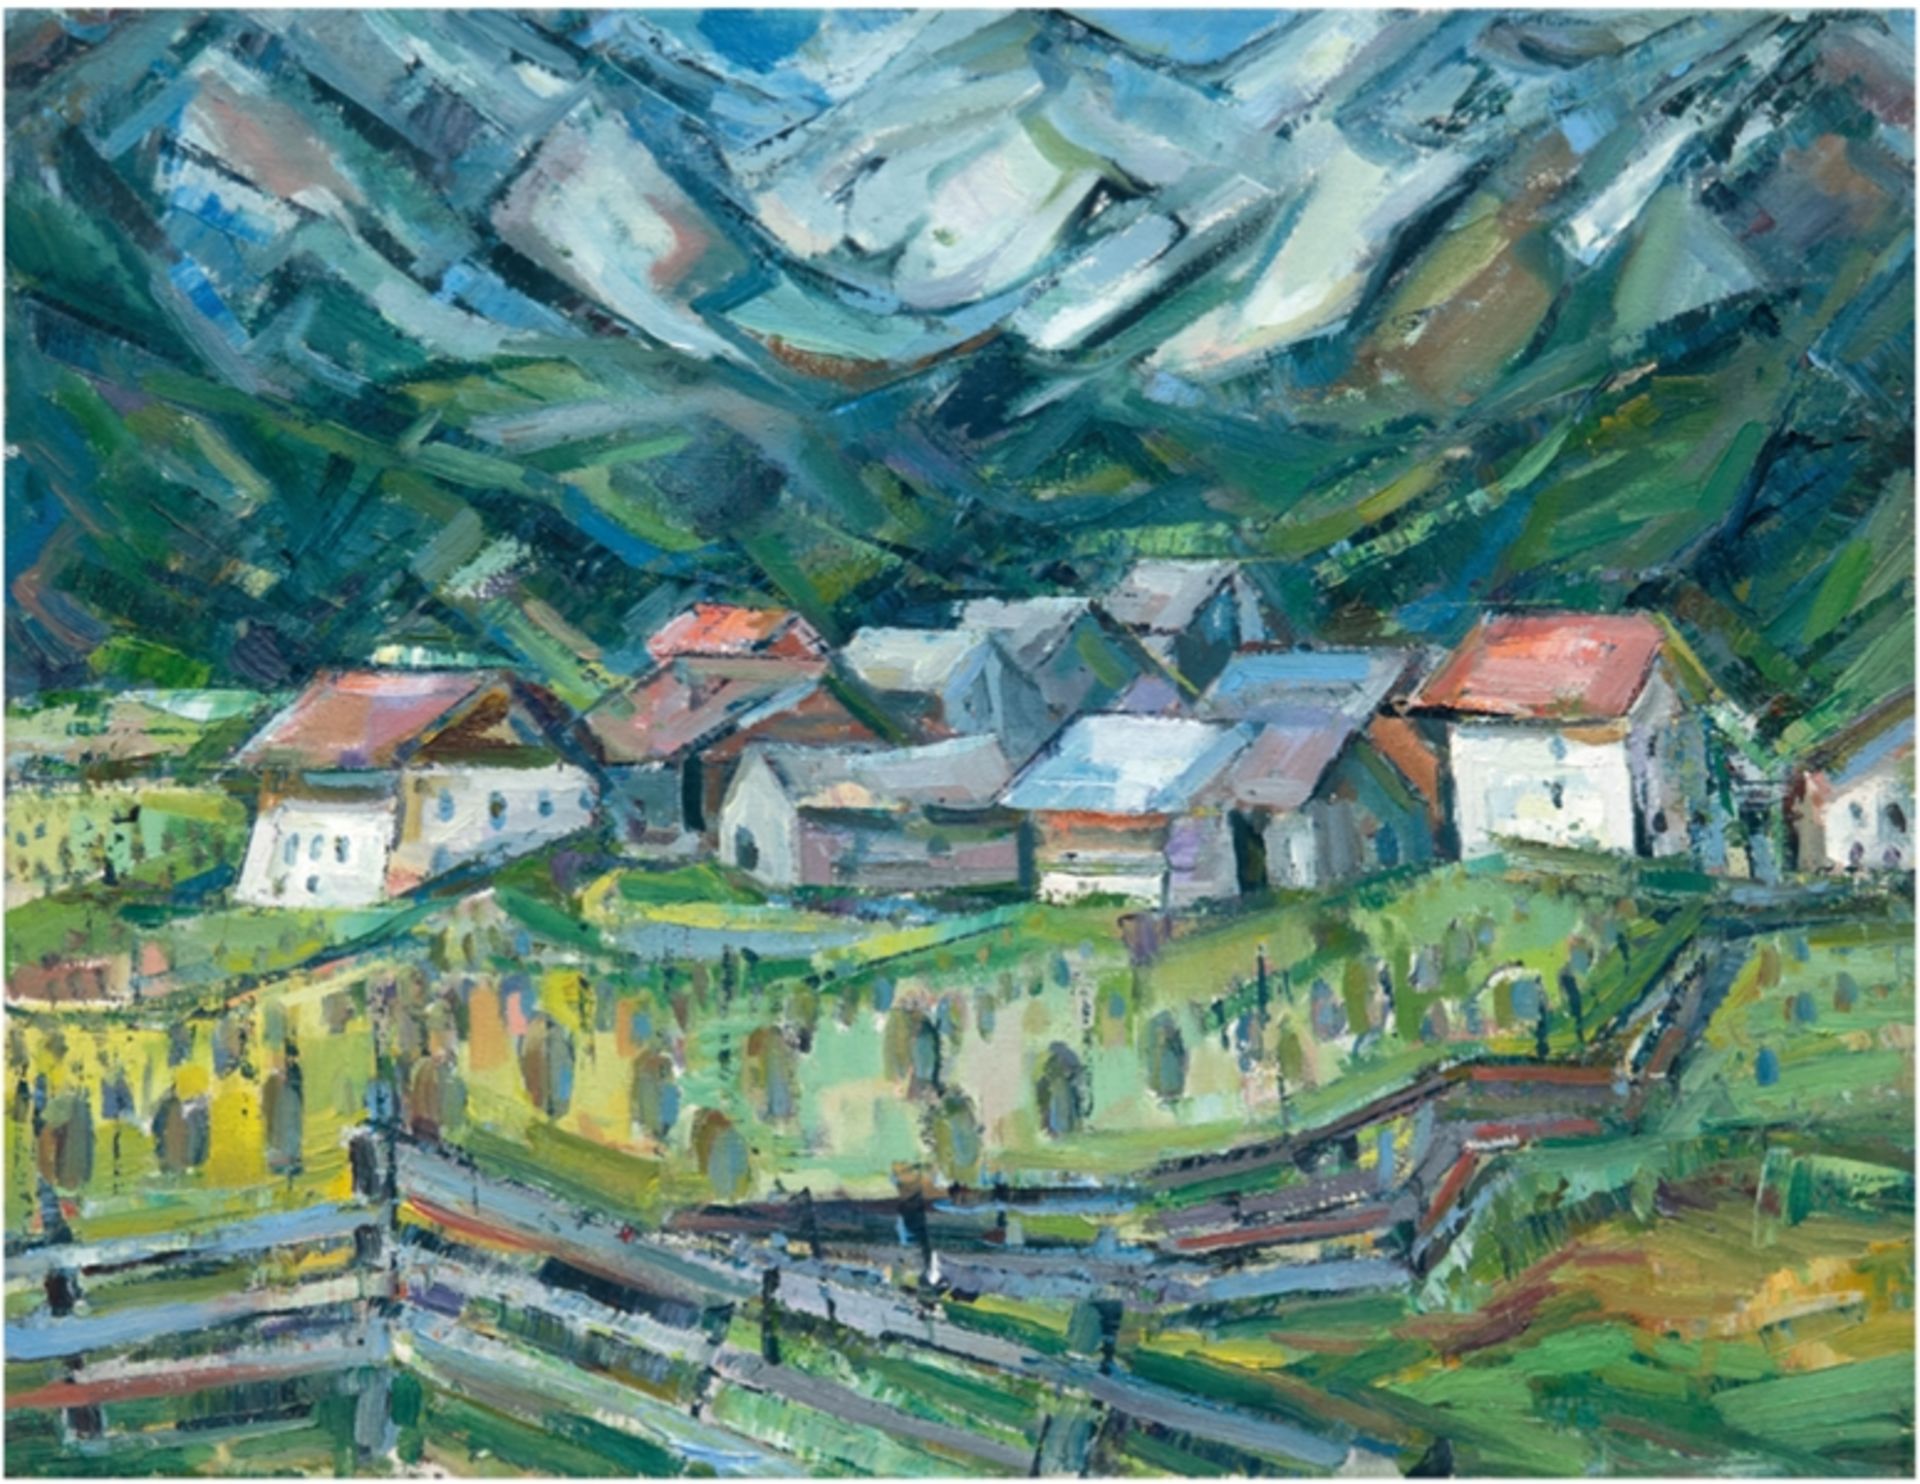 Landschaftsmaler "Alpendorf", Öl/Lw., unsign., verso bezeichnet "Steinhagen", 50x61 cm, ungerahmt